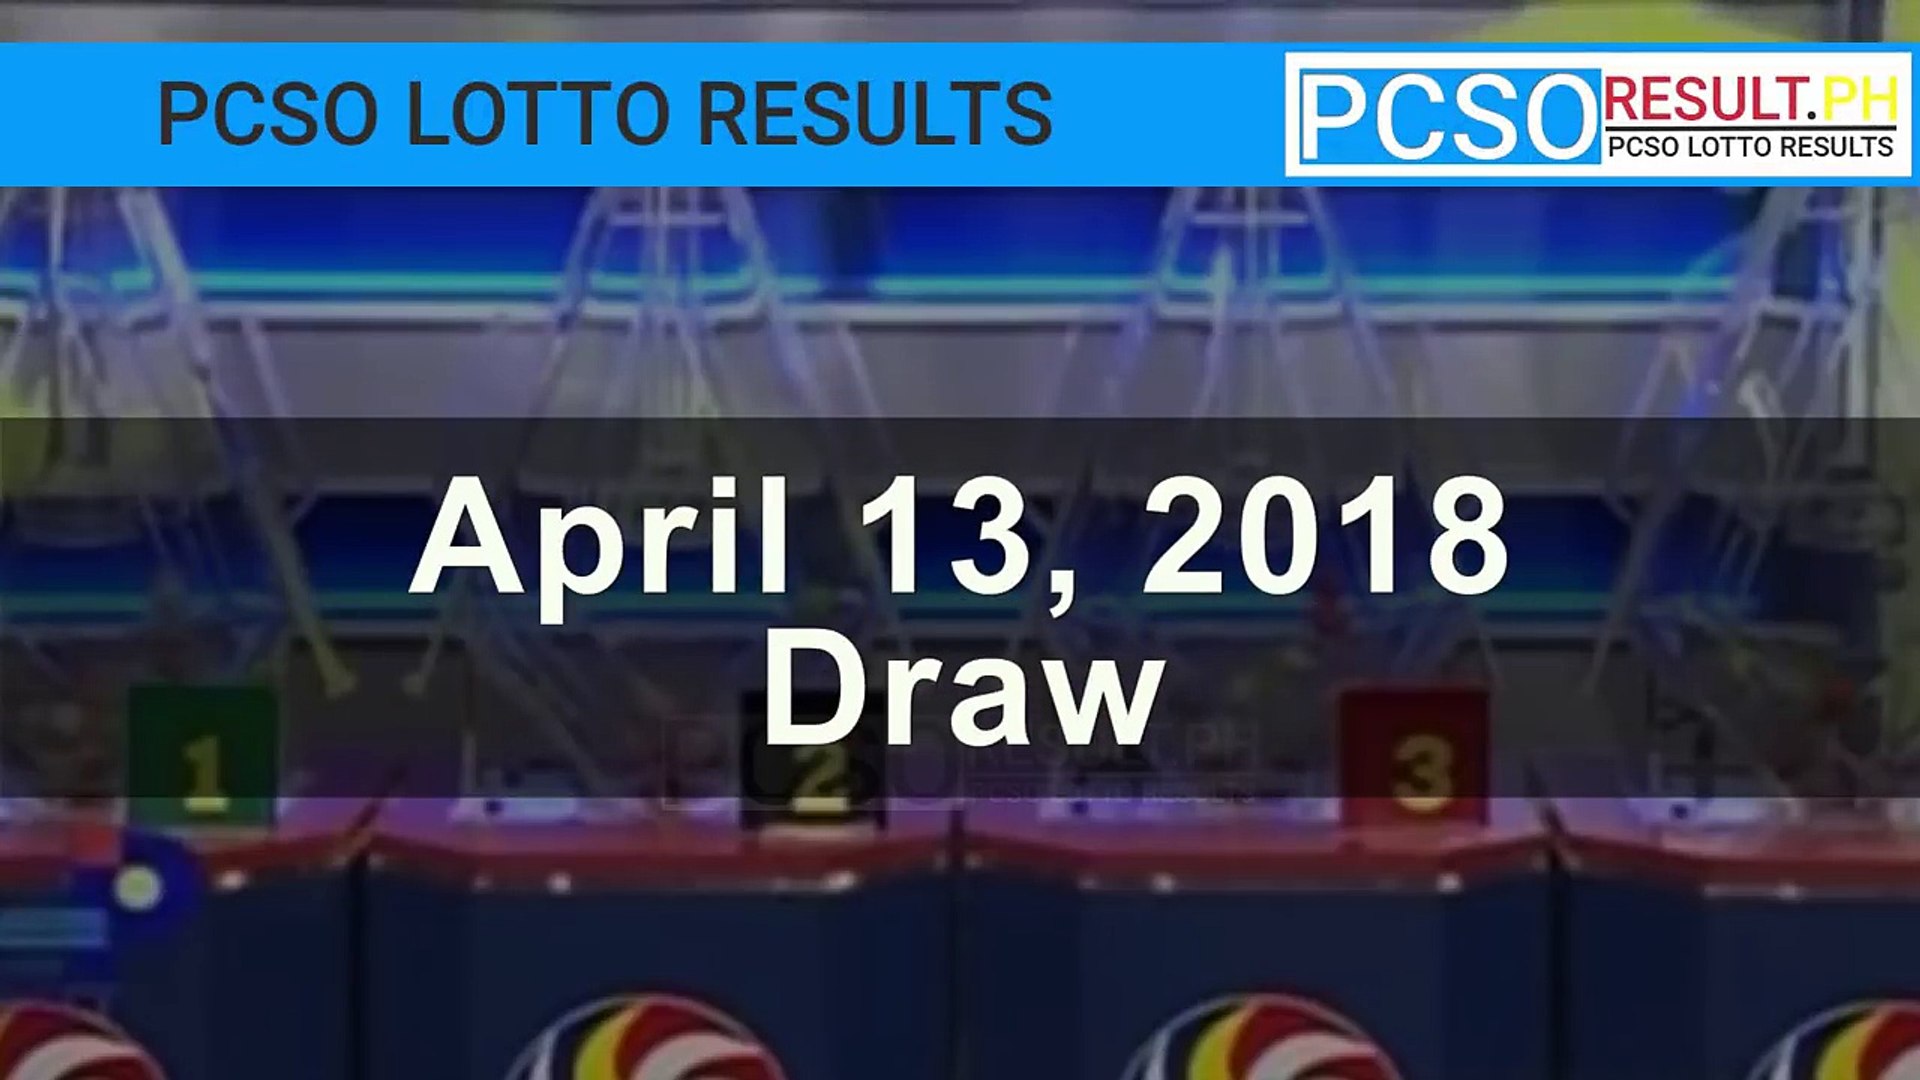 pcso lotto results nov 2 2018